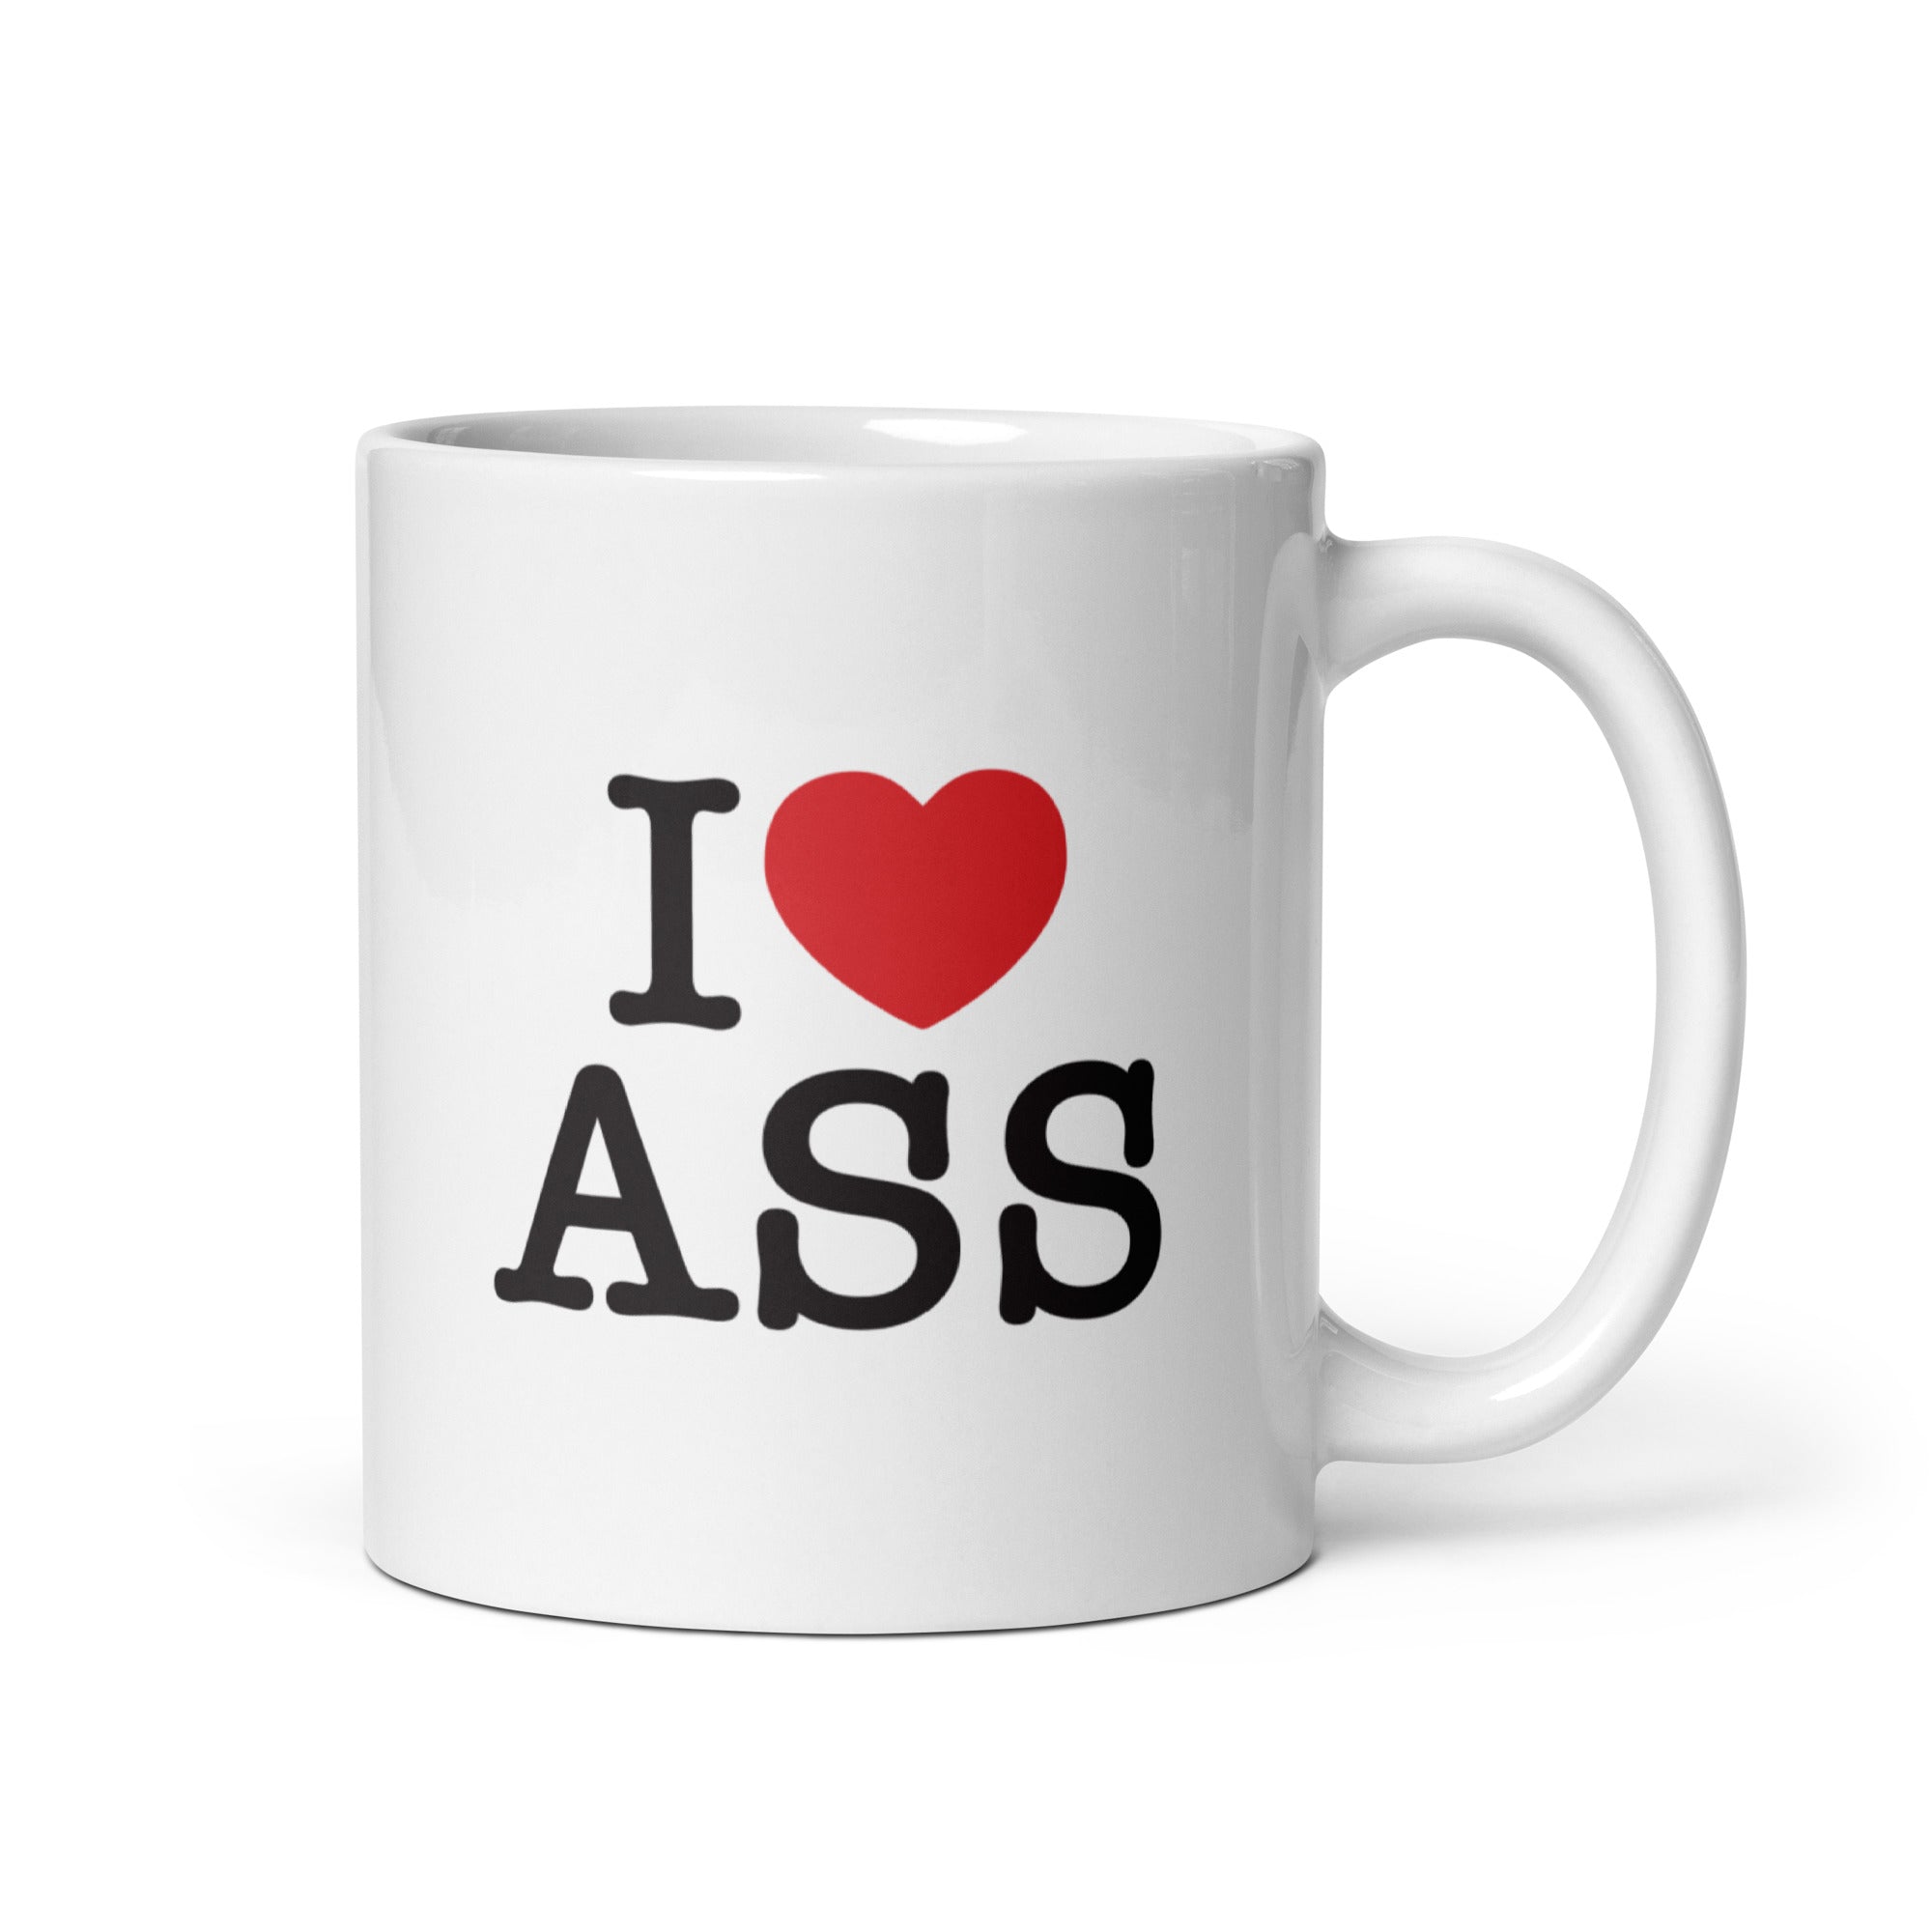 I Love Ass Mug